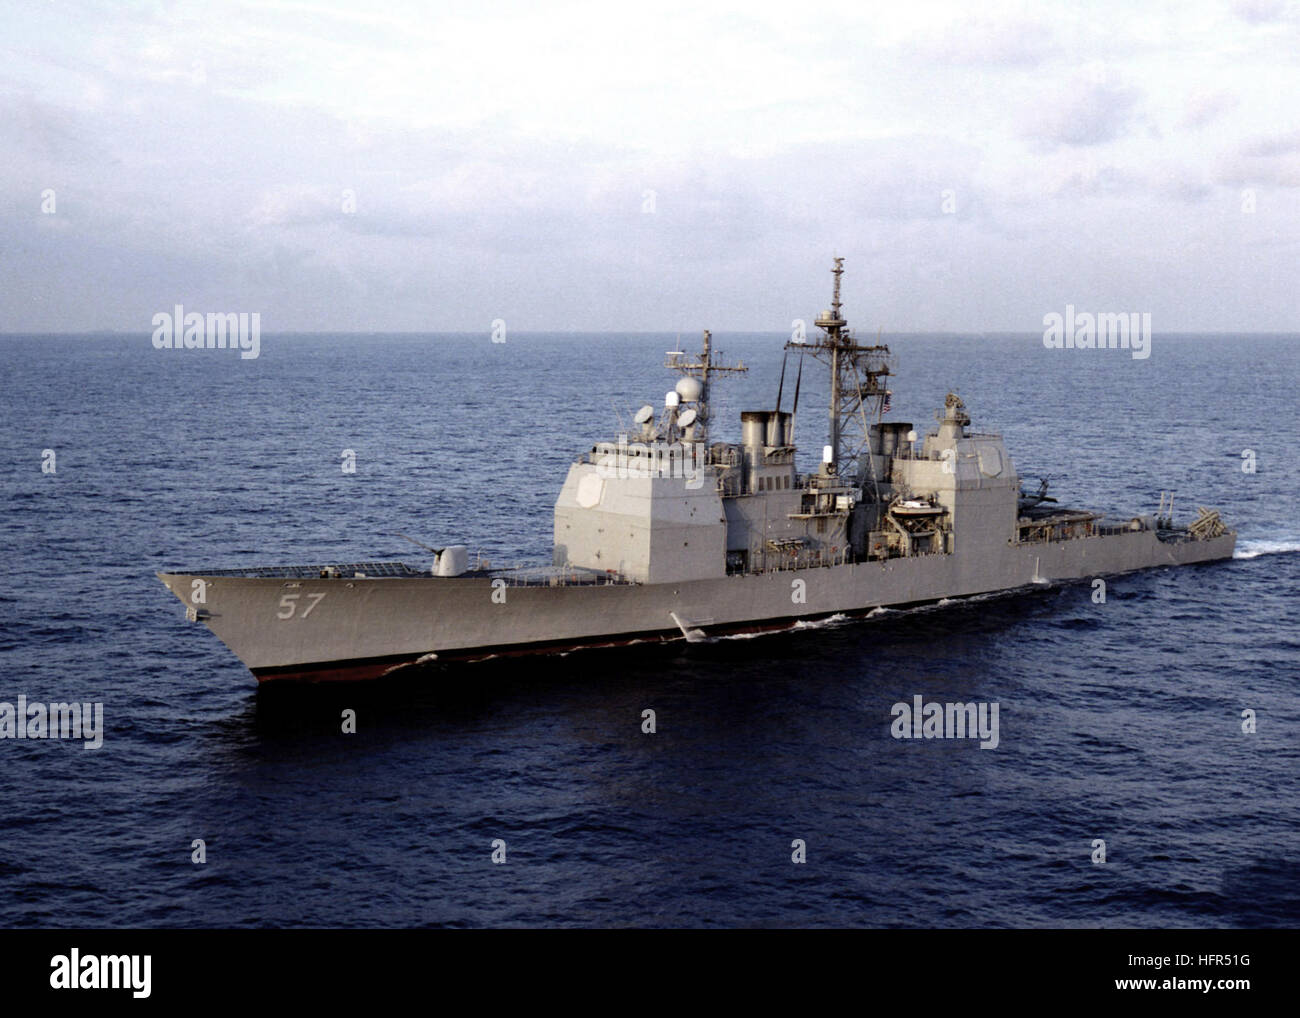 Ticonderoga-class missile cruiser USS Lake Champlain (CG 57) è attualmente in distribuzione nel mare della cina del sud come una parte della USS NIMITZ CVN 68 gruppo di combattimento a sostegno del funzionamento orologio meridionale. USS Lake Champlain (Cg-57) 1997 Foto Stock